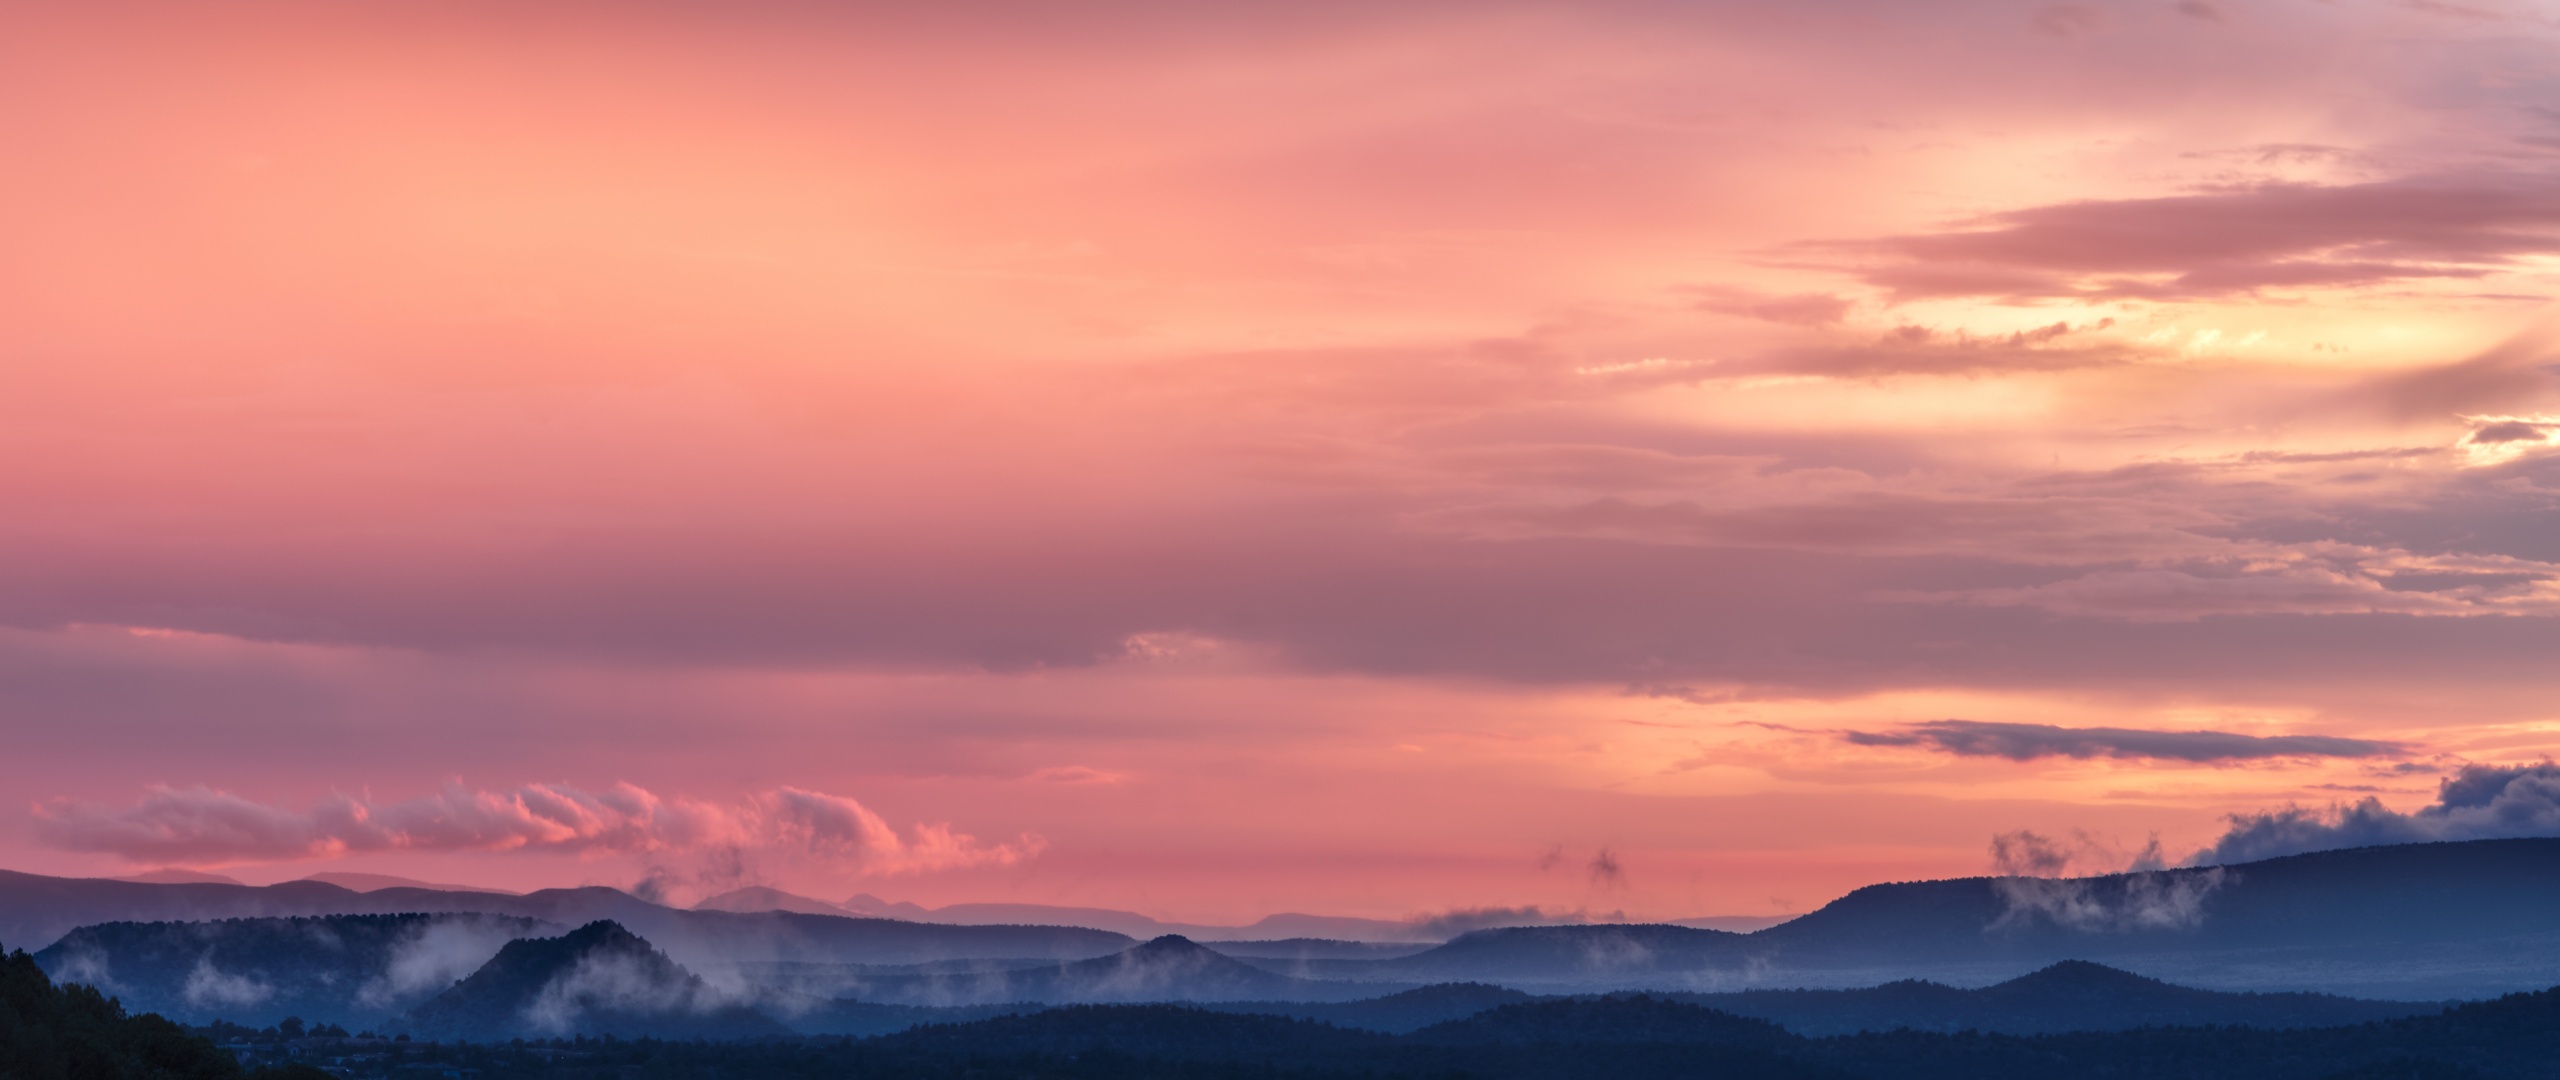 Hình nền bầu trời hồng - Hoàng hôn - Núi - Thiên nhiên - #3178: Bức ảnh số 3178 sẽ làm thay đổi toàn bộ màn hình của bạn với bầu trời hồng, hoàng hôn tuyệt đẹp và thiên nhiên đầy quyến rũ. Núi vờn quanh, tạo nên một khung cảnh huyền bí. Độ chi tiết tuyệt vời, tông màu ấm áp sẽ làm cho bạn thấy vô cùng yên bình và thư giãn.